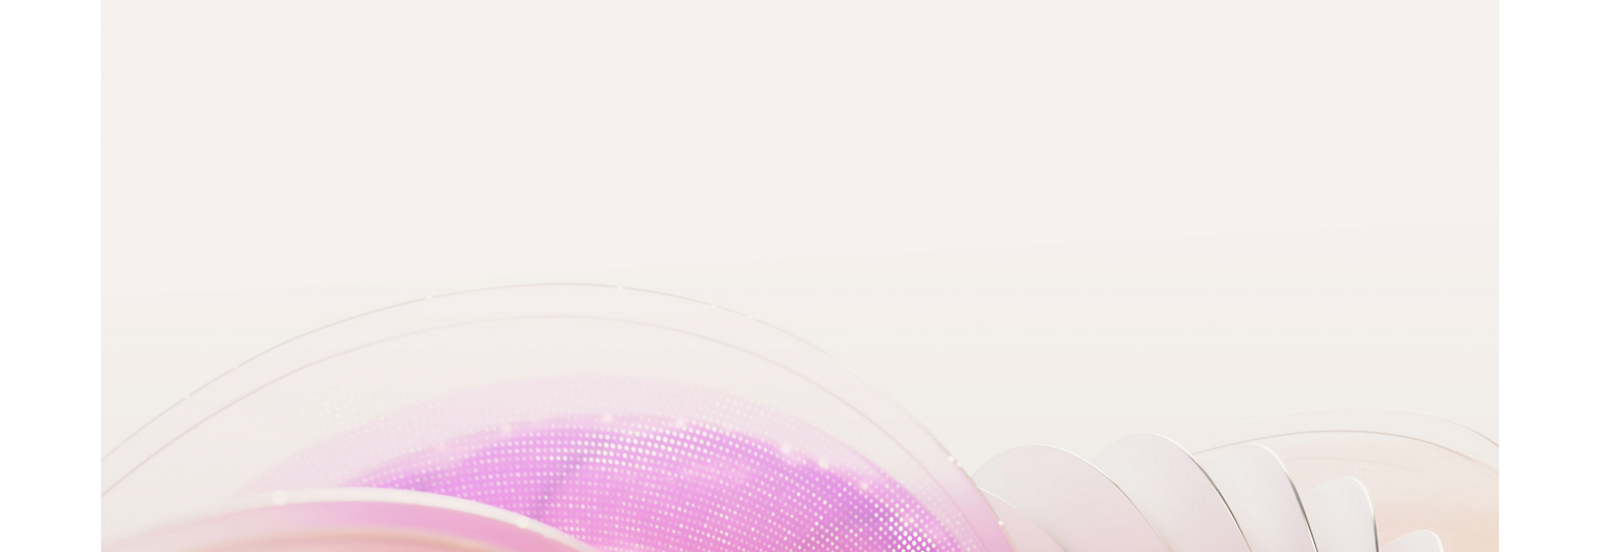 Abstracte pastelkleurige achtergrond met zacht roze curves en een stralend paars rasterpatroon aan de linkerkant.